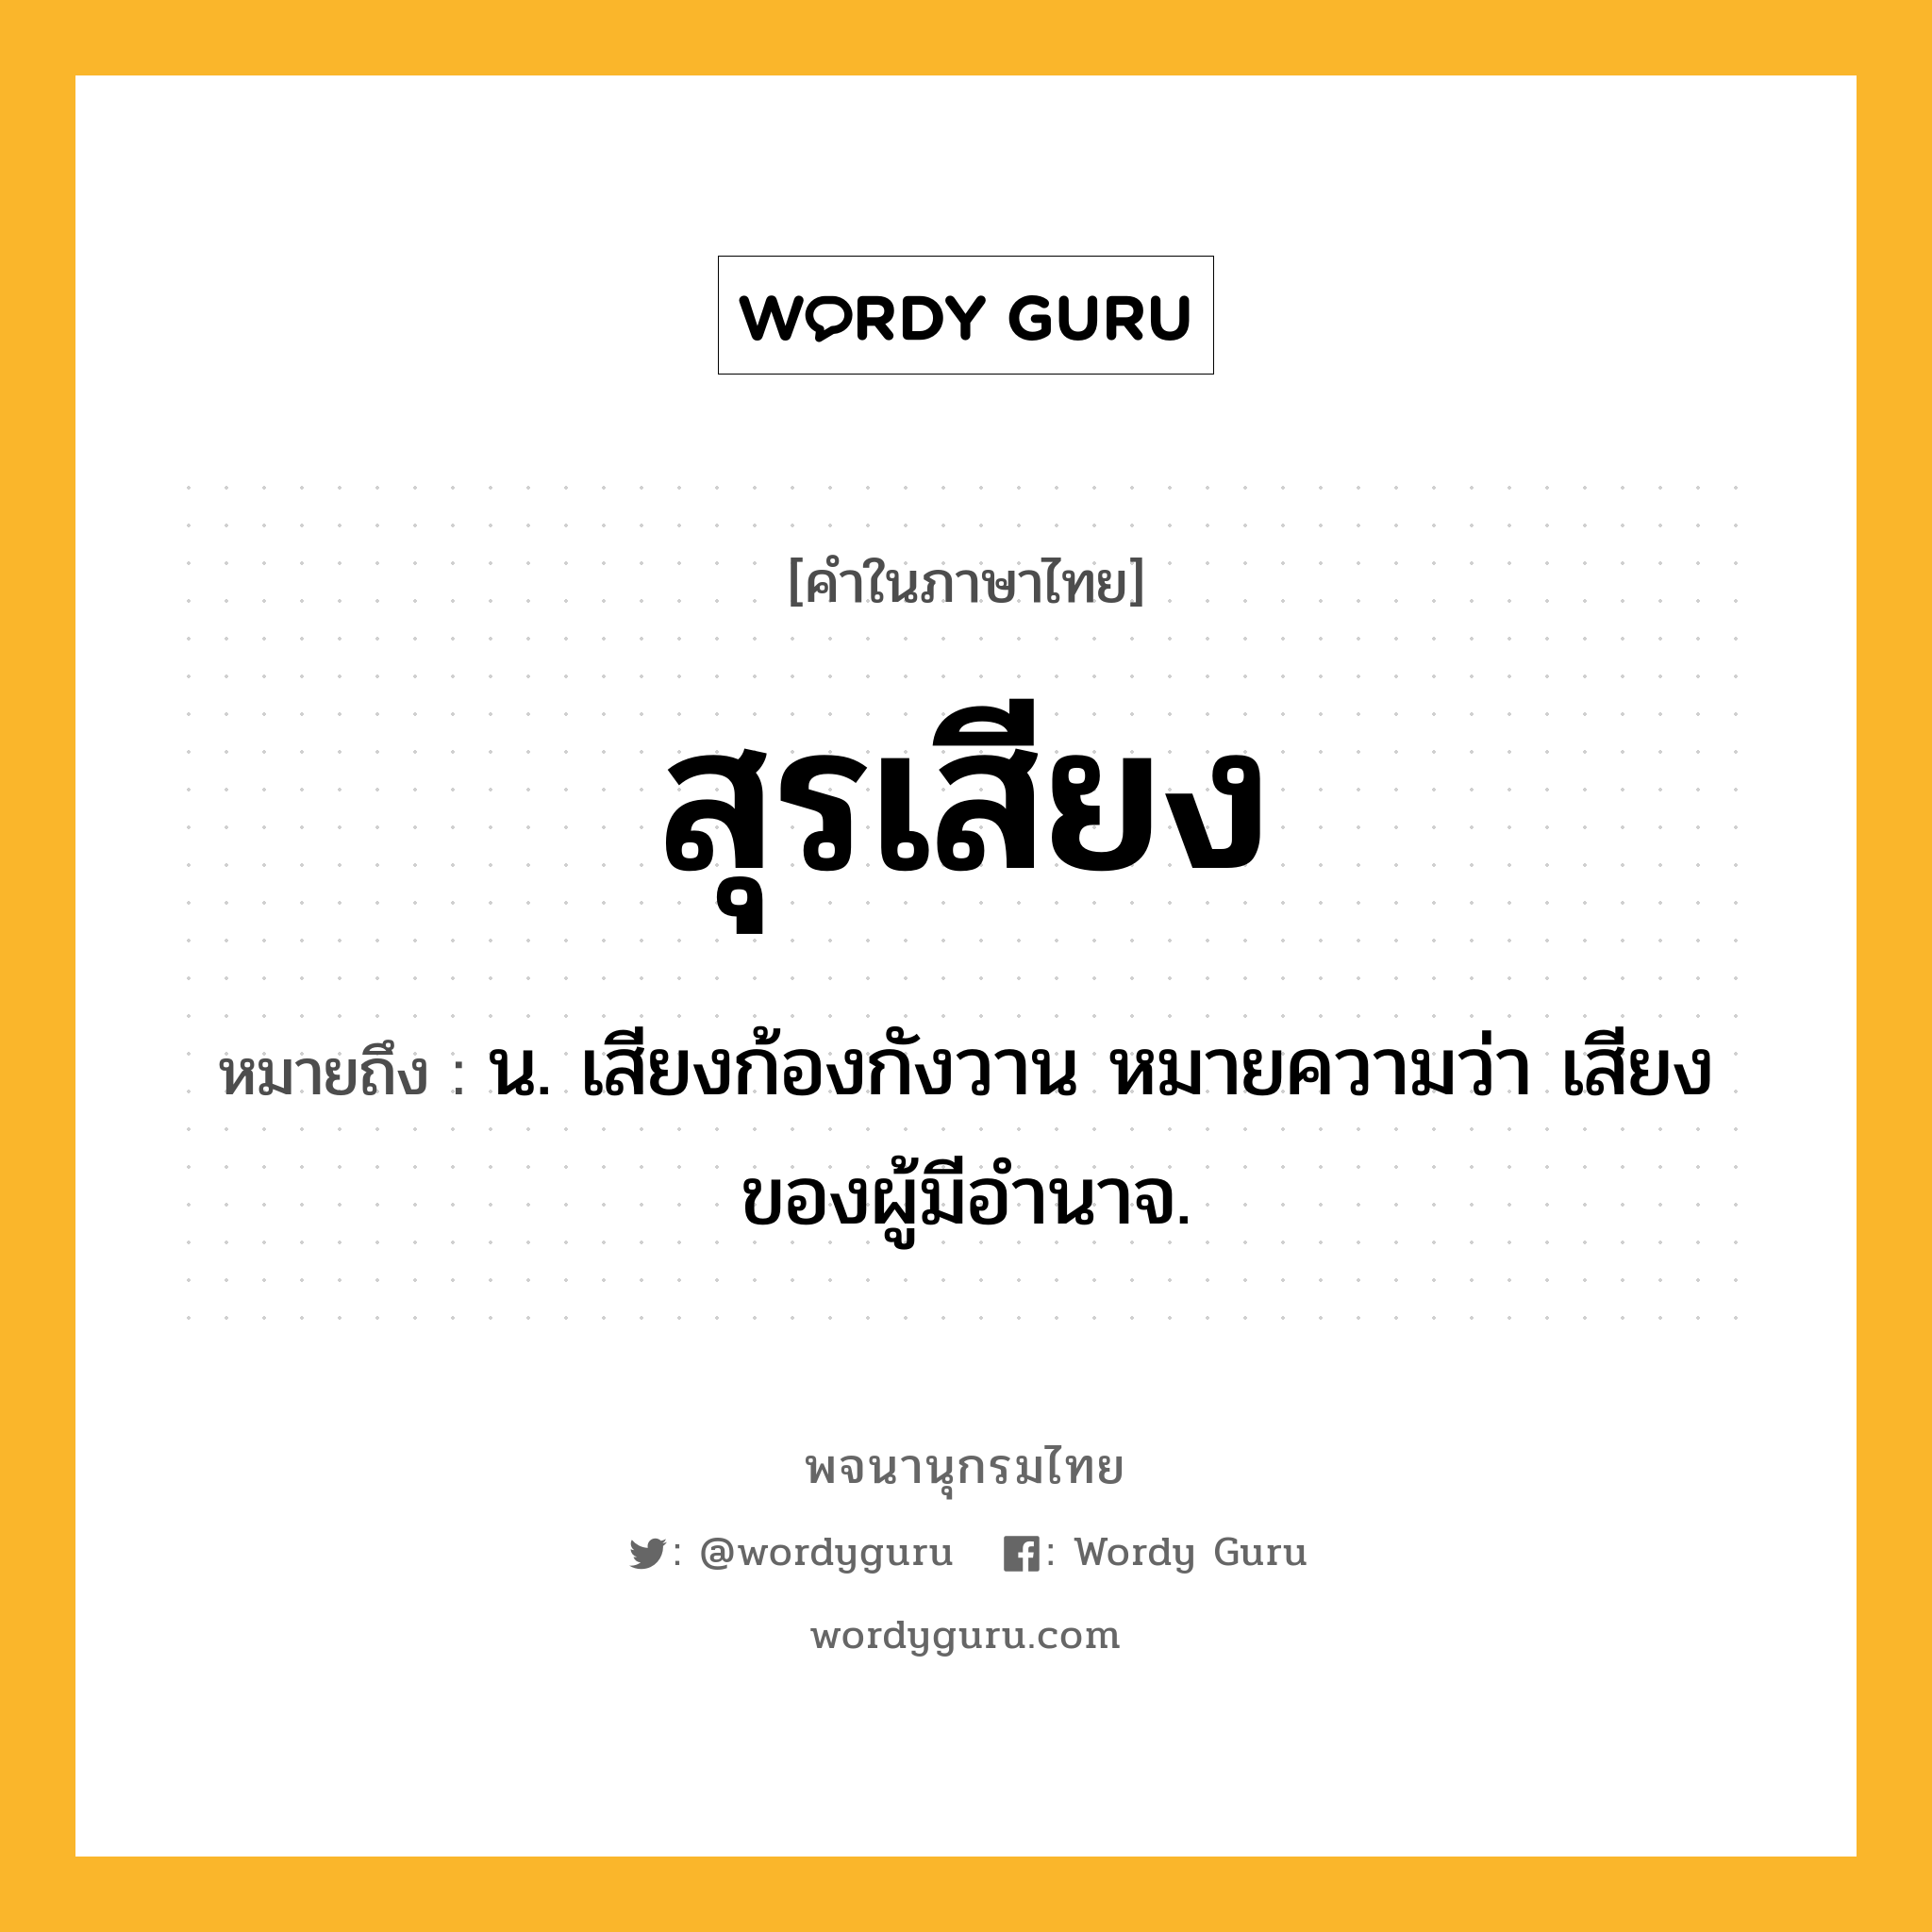 สุรเสียง ความหมาย หมายถึงอะไร?, คำในภาษาไทย สุรเสียง หมายถึง น. เสียงก้องกังวาน หมายความว่า เสียงของผู้มีอํานาจ.